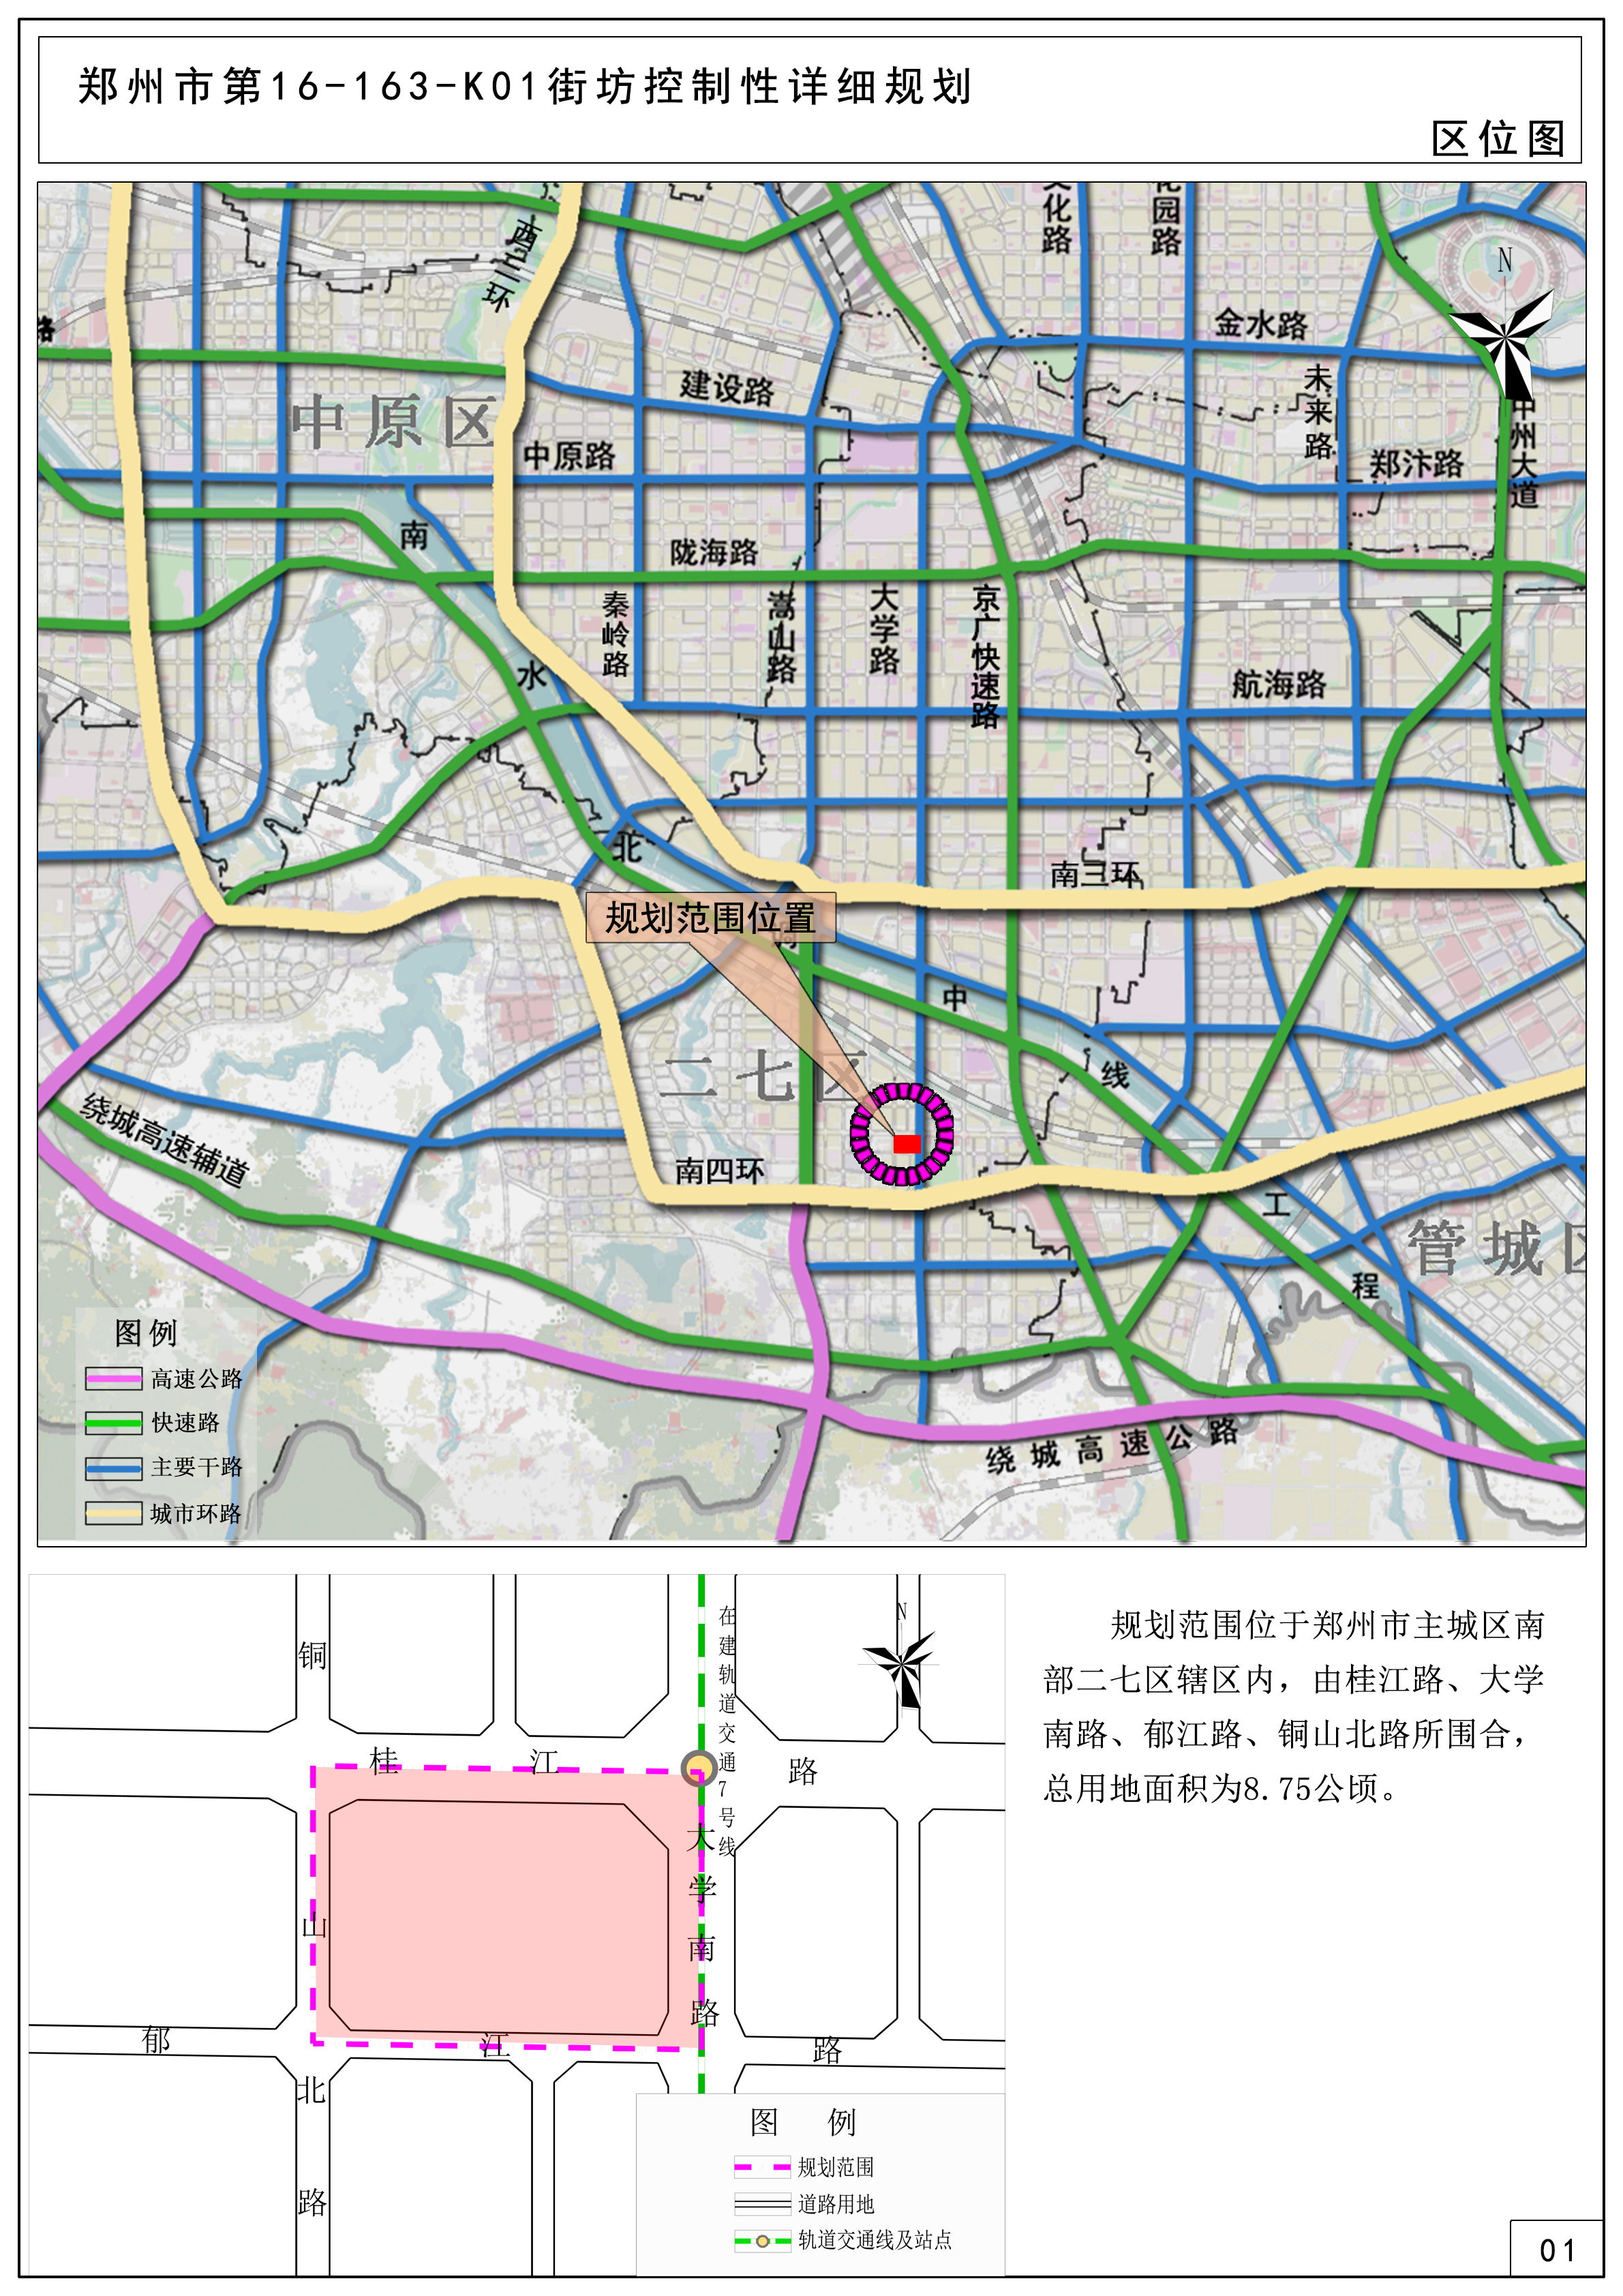 郑州市第16-163-K01街坊控制性详细规划